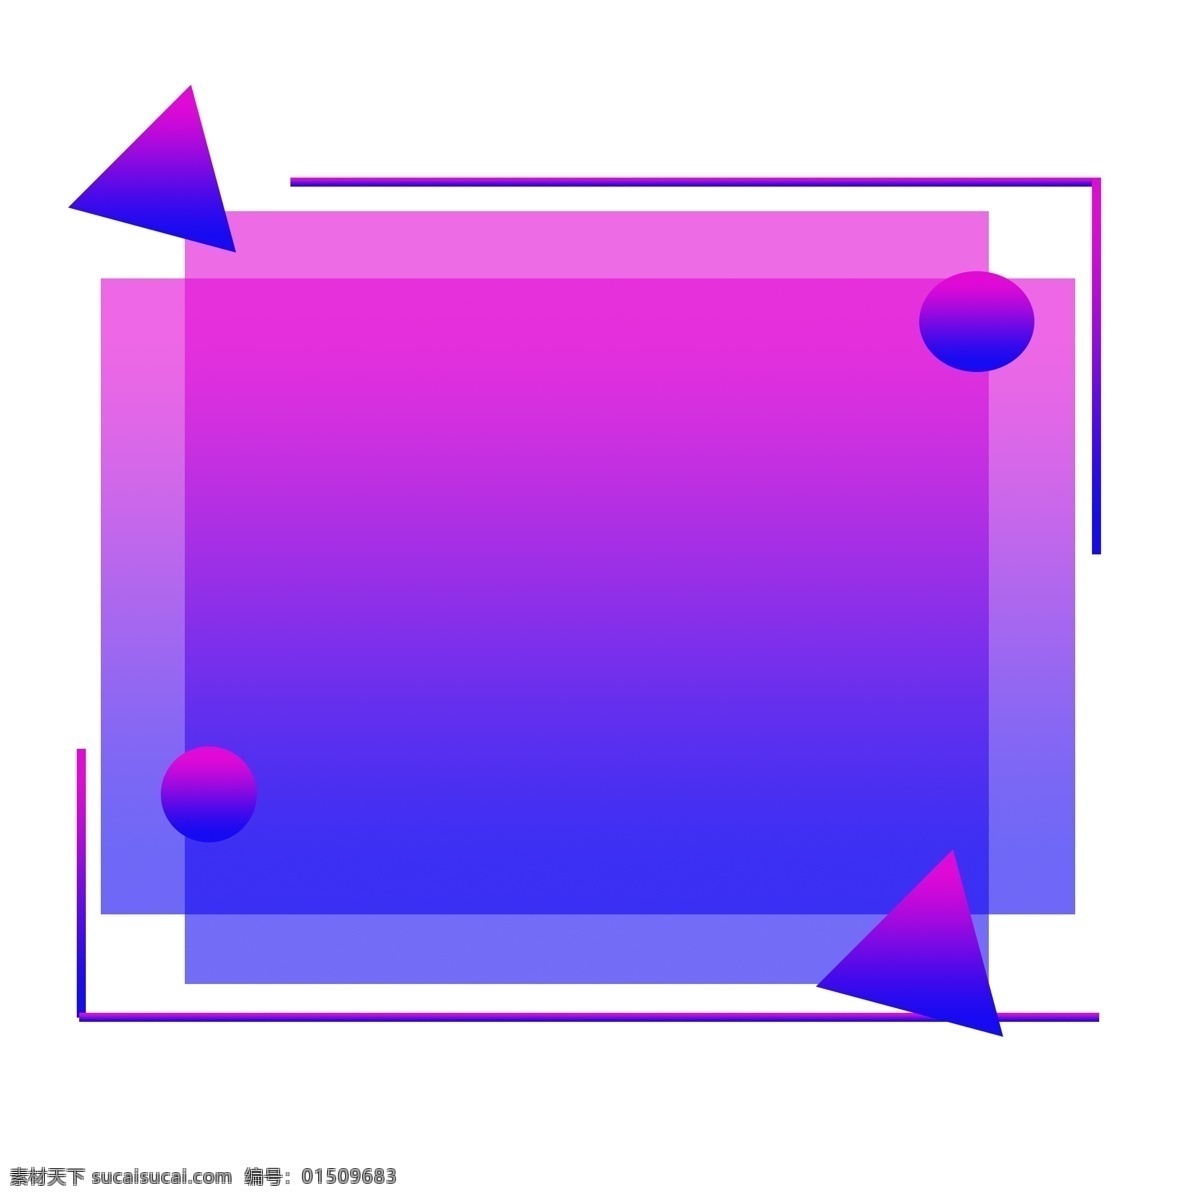 蓝紫色 渐变 纹理 边框 长方形 商用 简约 流行色彩 科技风格 装饰 背景 装饰元素 可商用 渐变风